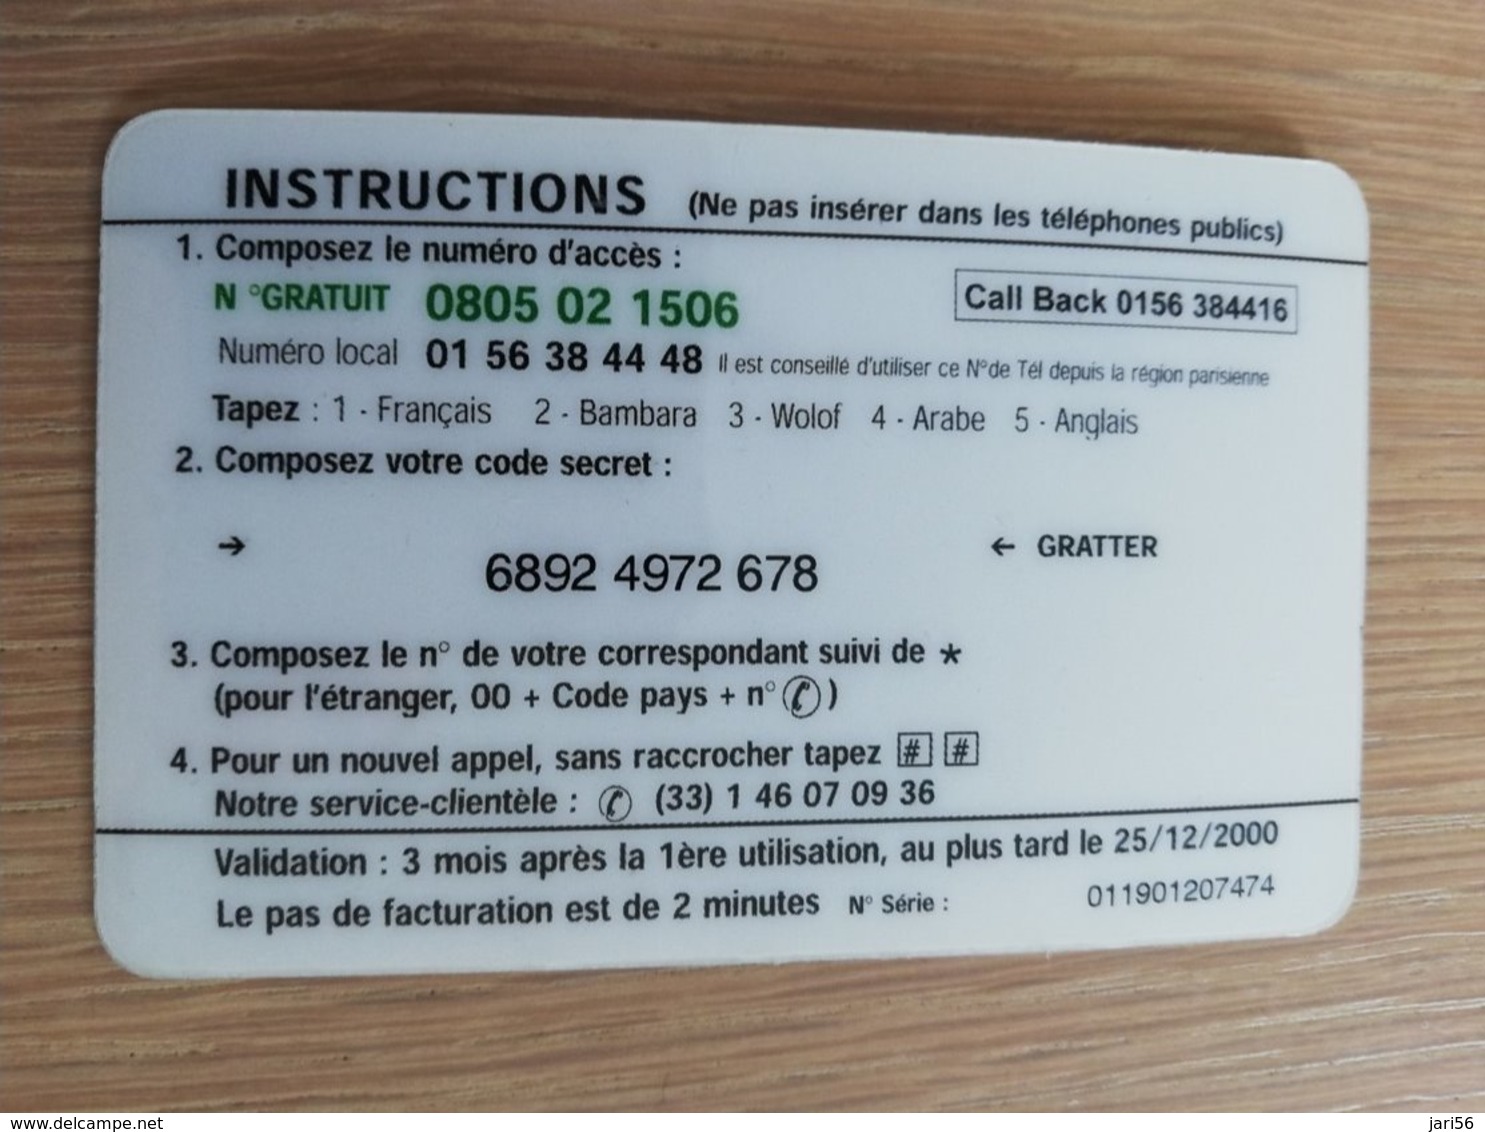 FRANCE/FRANKRIJK  50 FF BONJOUR AFRIQUE    PREPAID  USED    ** 1464** - Nachladekarten (Handy/SIM)